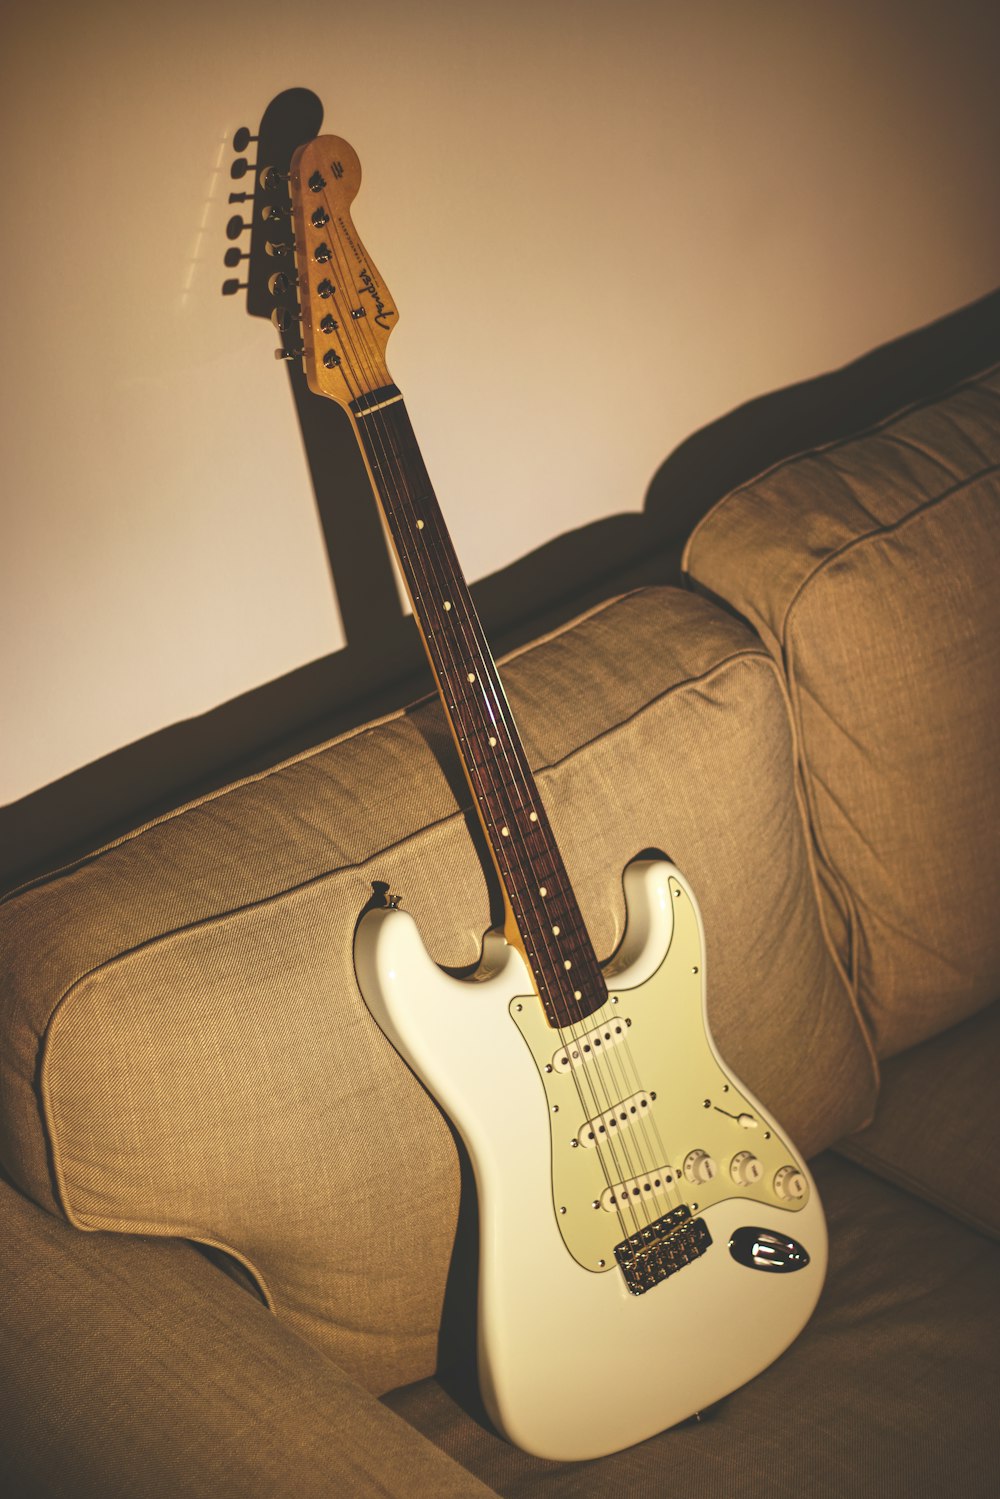 guitarra elétrica branca e preta stratocaster no sofá marrom